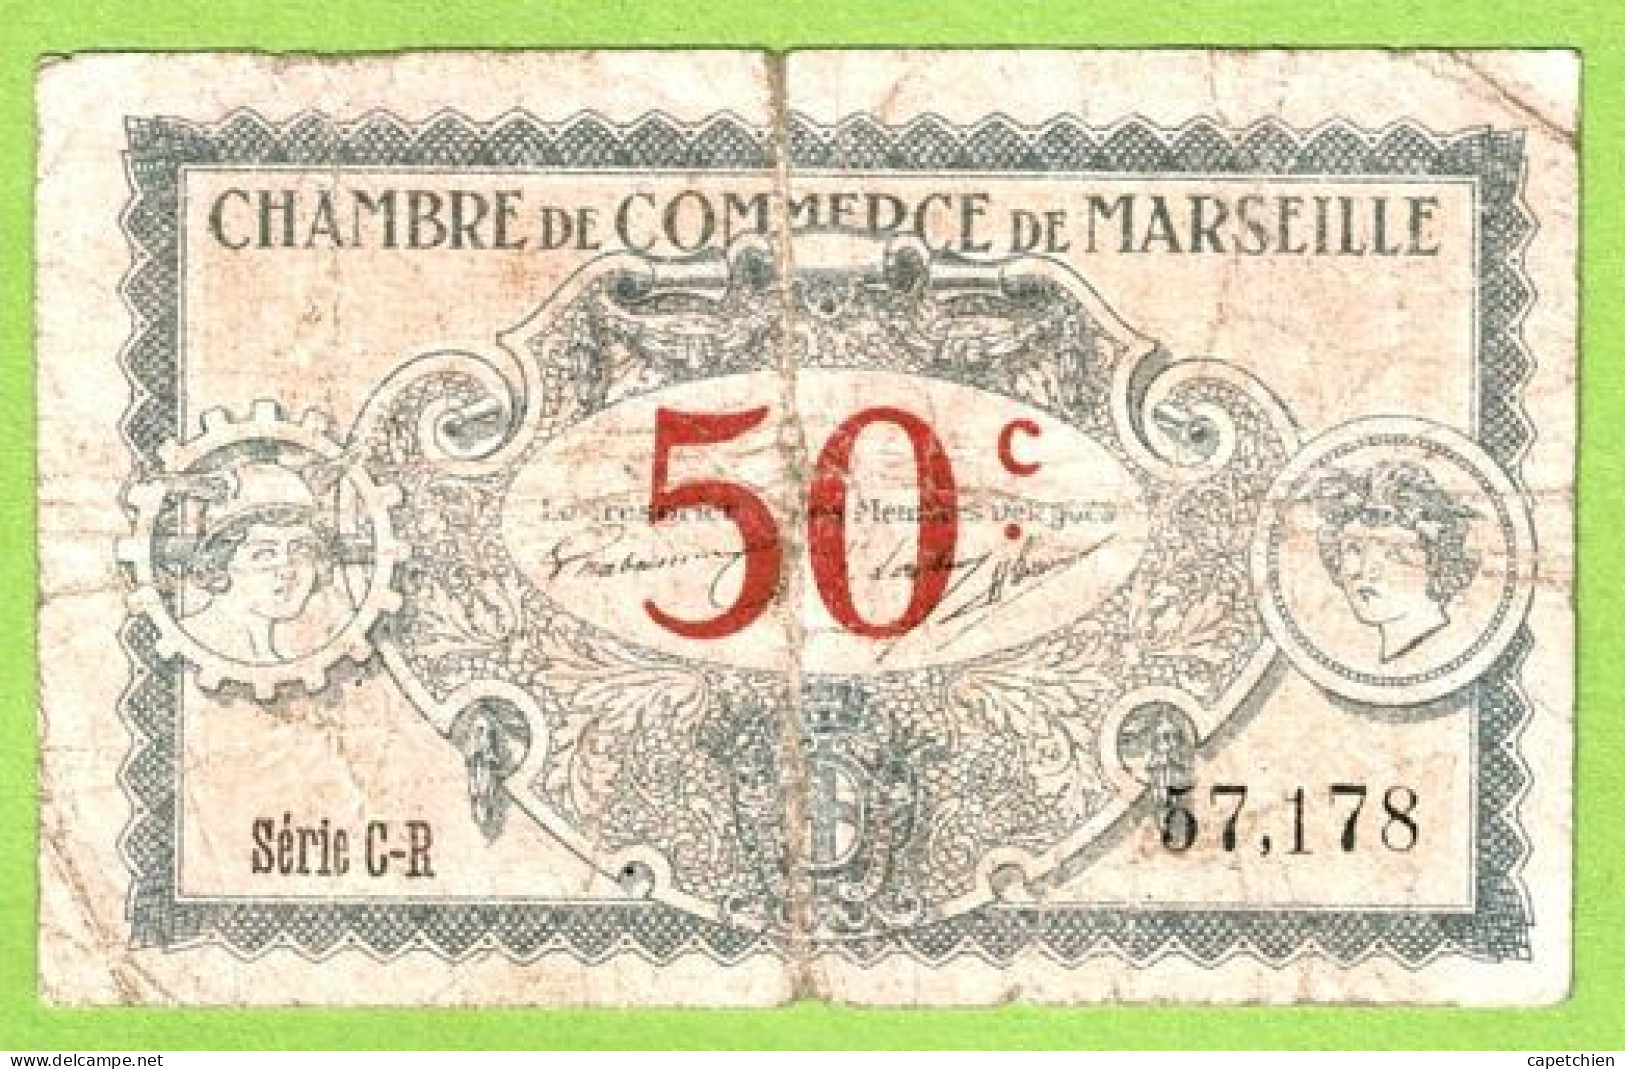 FRANCE / CHAMBRE De COMMERCE / MARSEILLE / 50 CENTIMES / 1917 / N° 57178 / SERIE C - R - Handelskammer